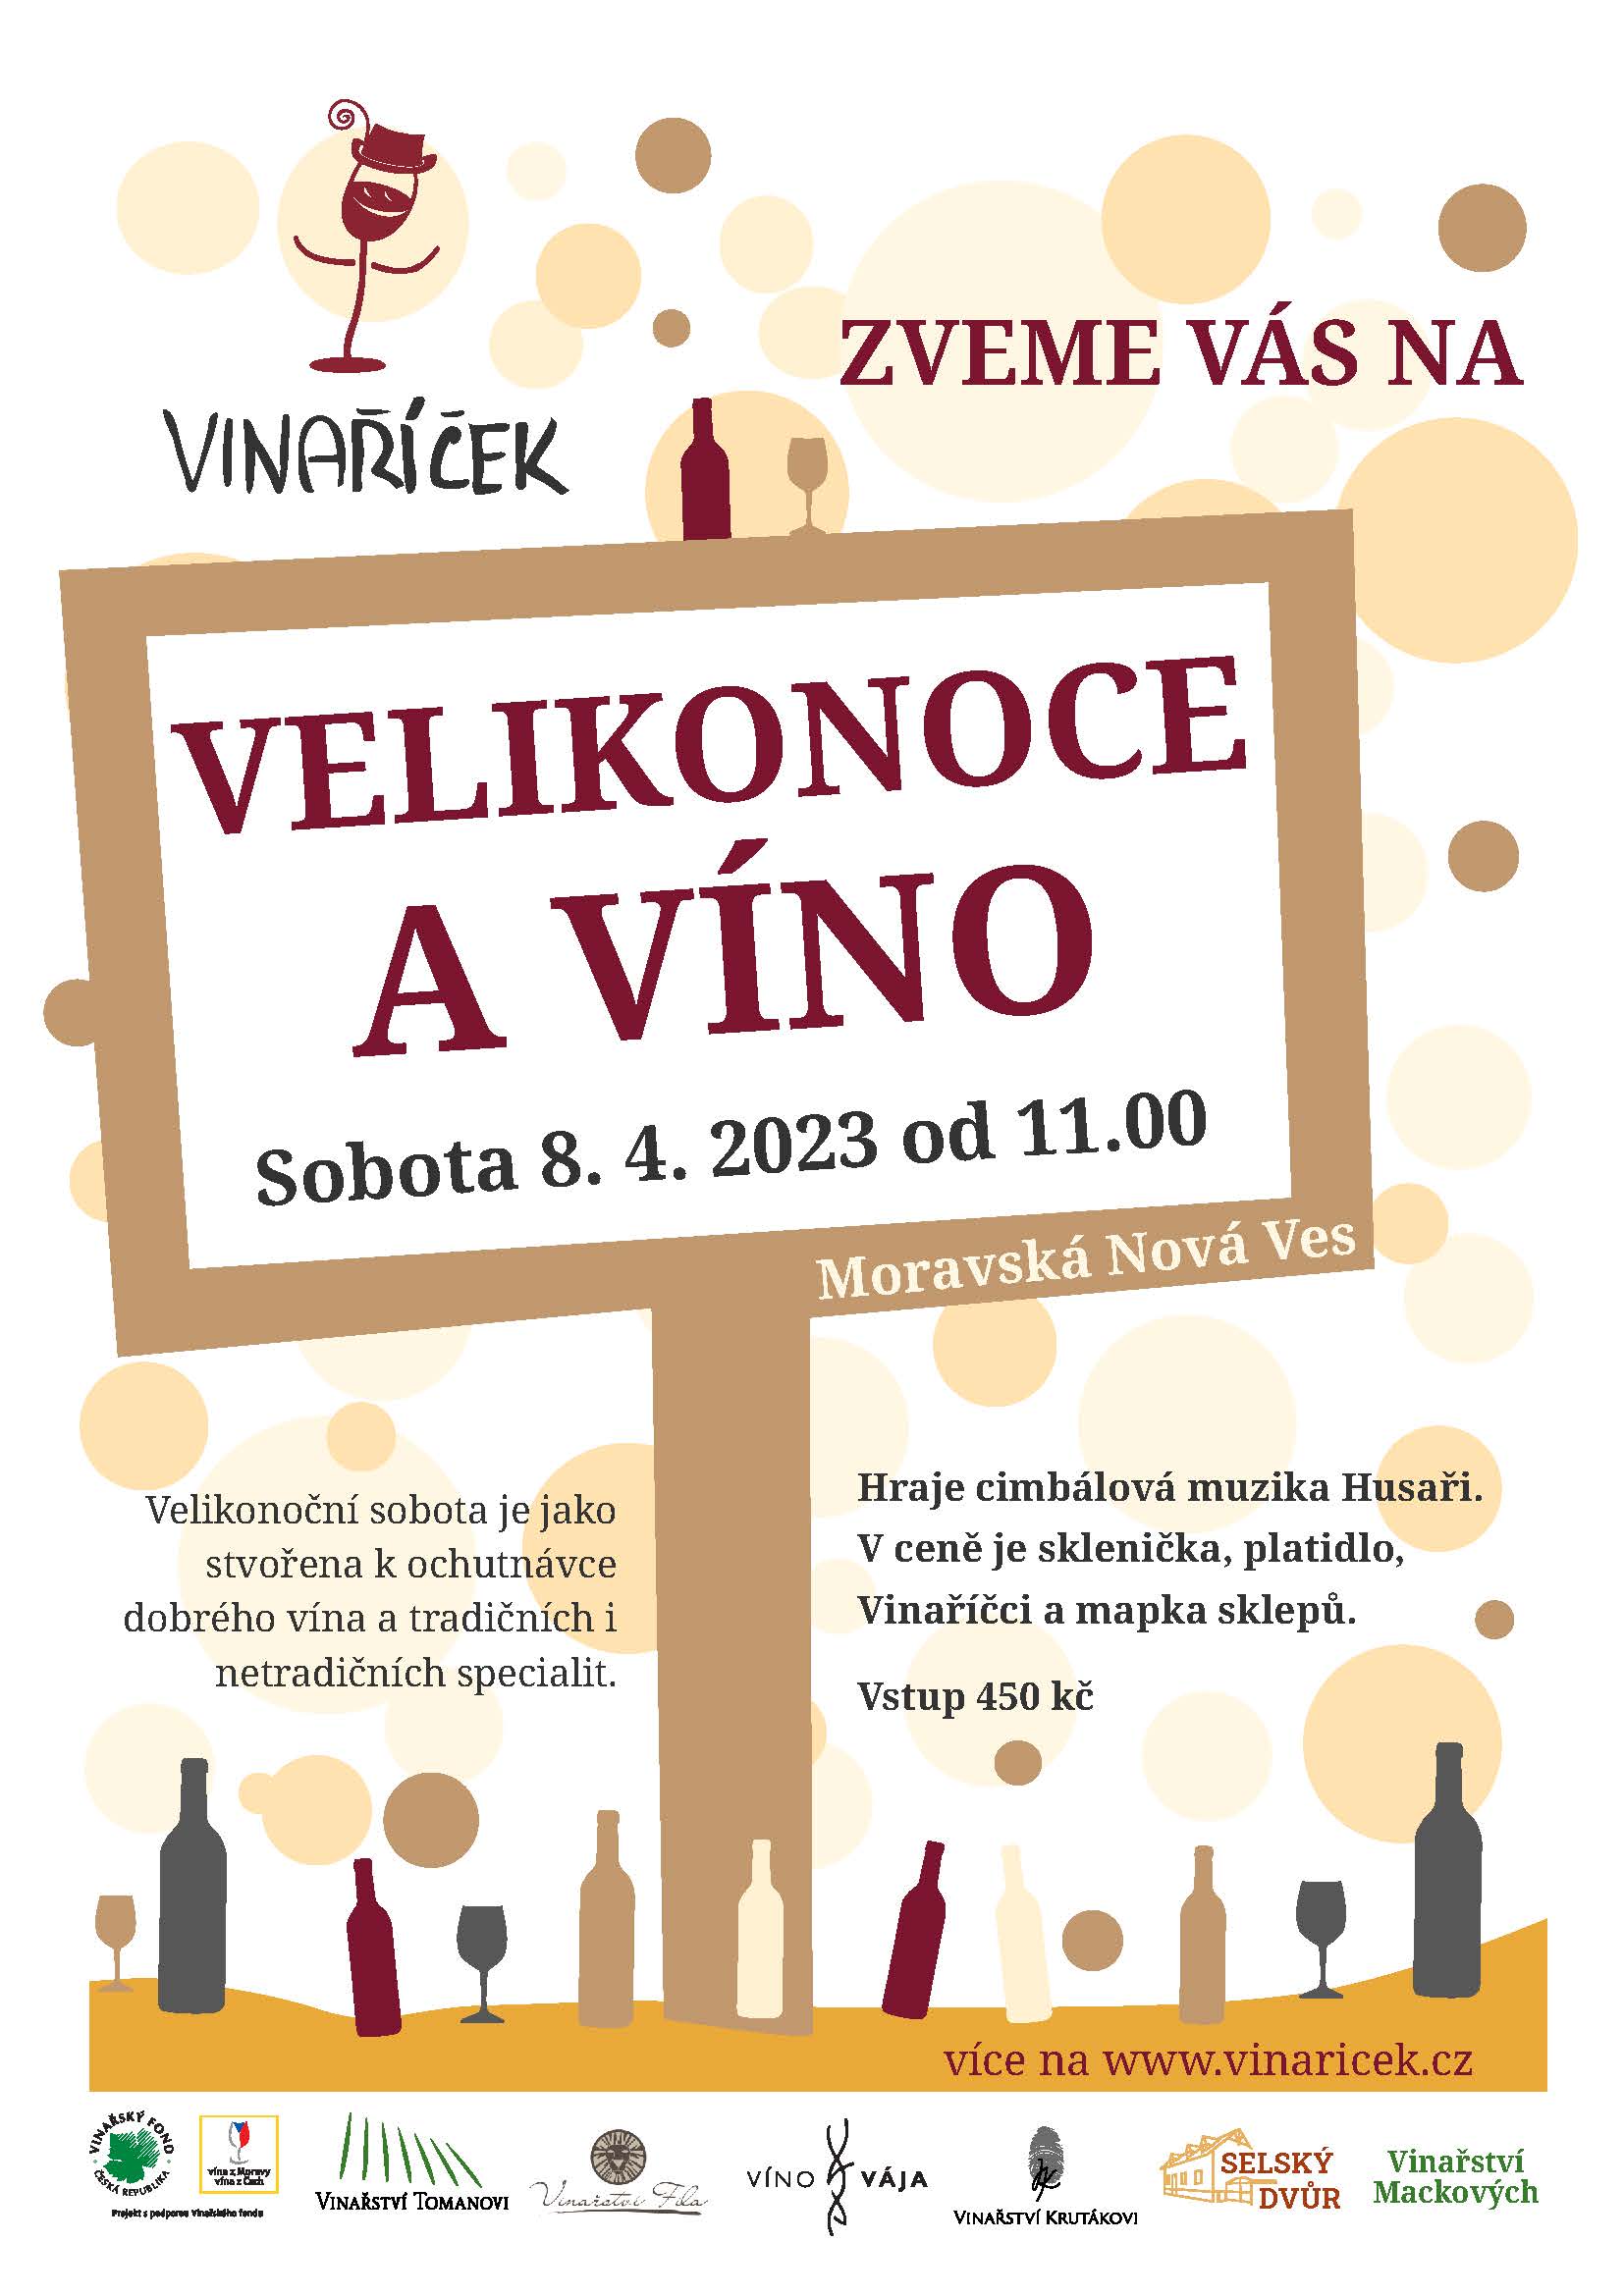 Velikonoce a víno | Moravská Nová Ves | 8. 4. 2023